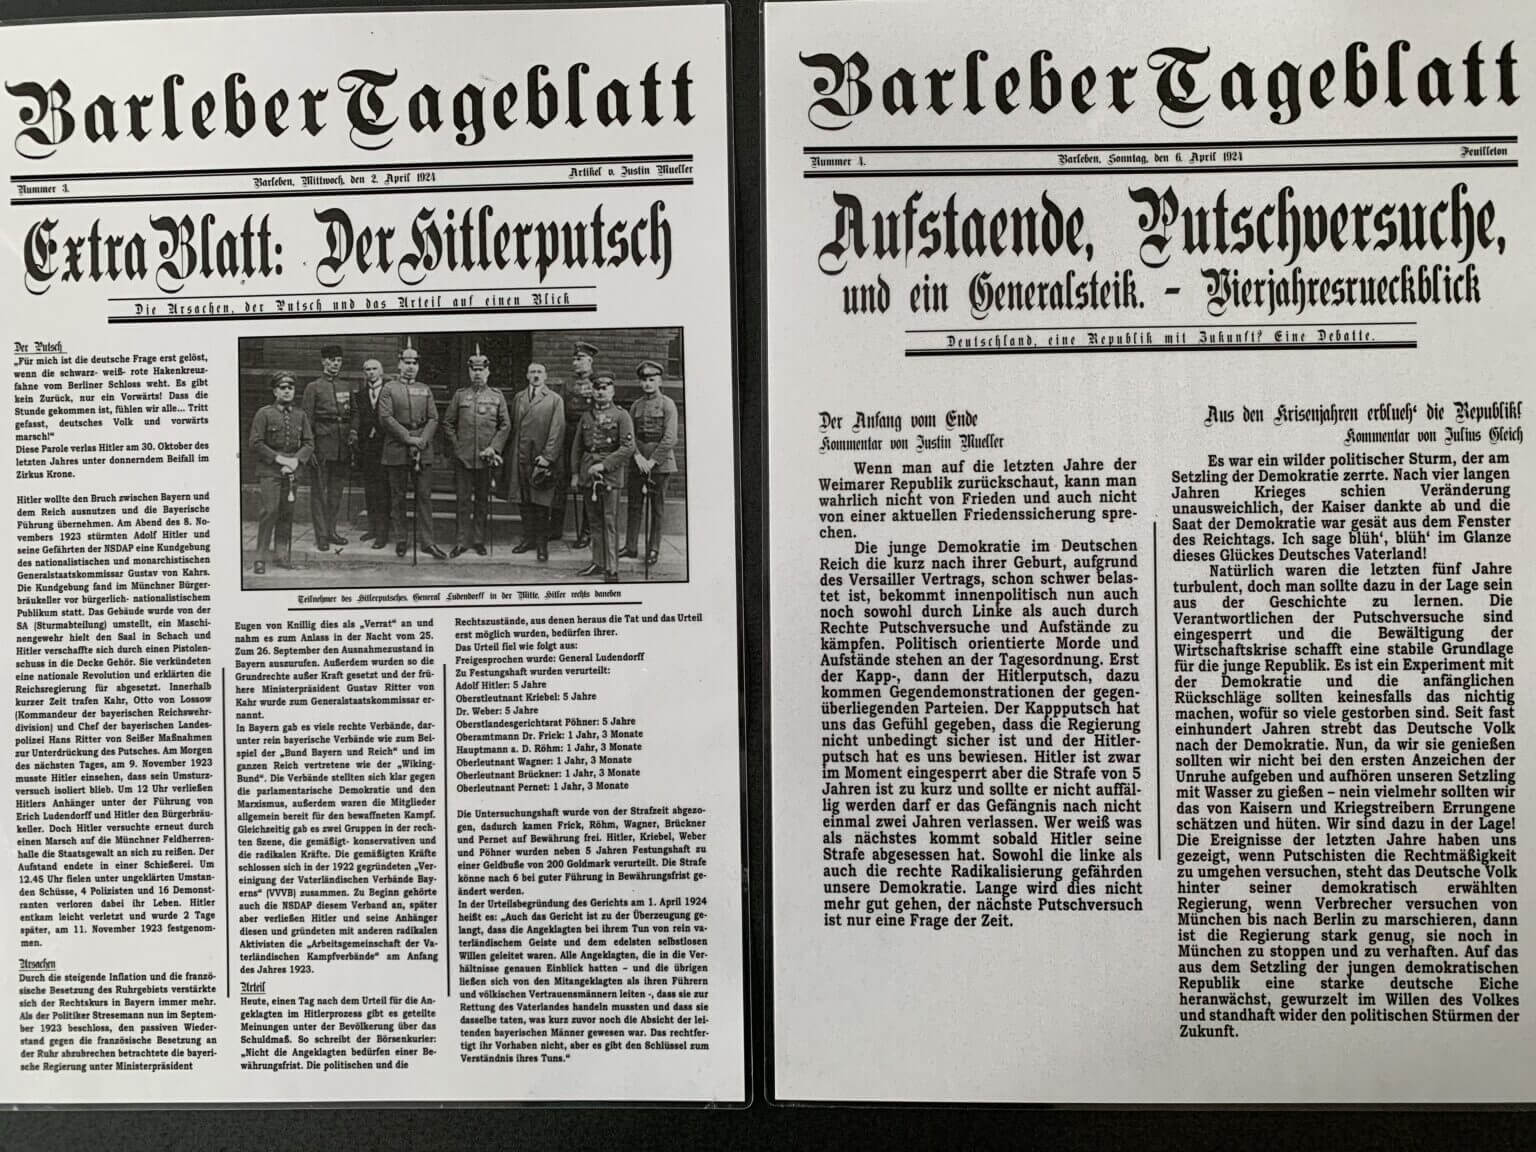 Fachschaft Geschichte Barleber Tagesblatt 2 1536x1152 1